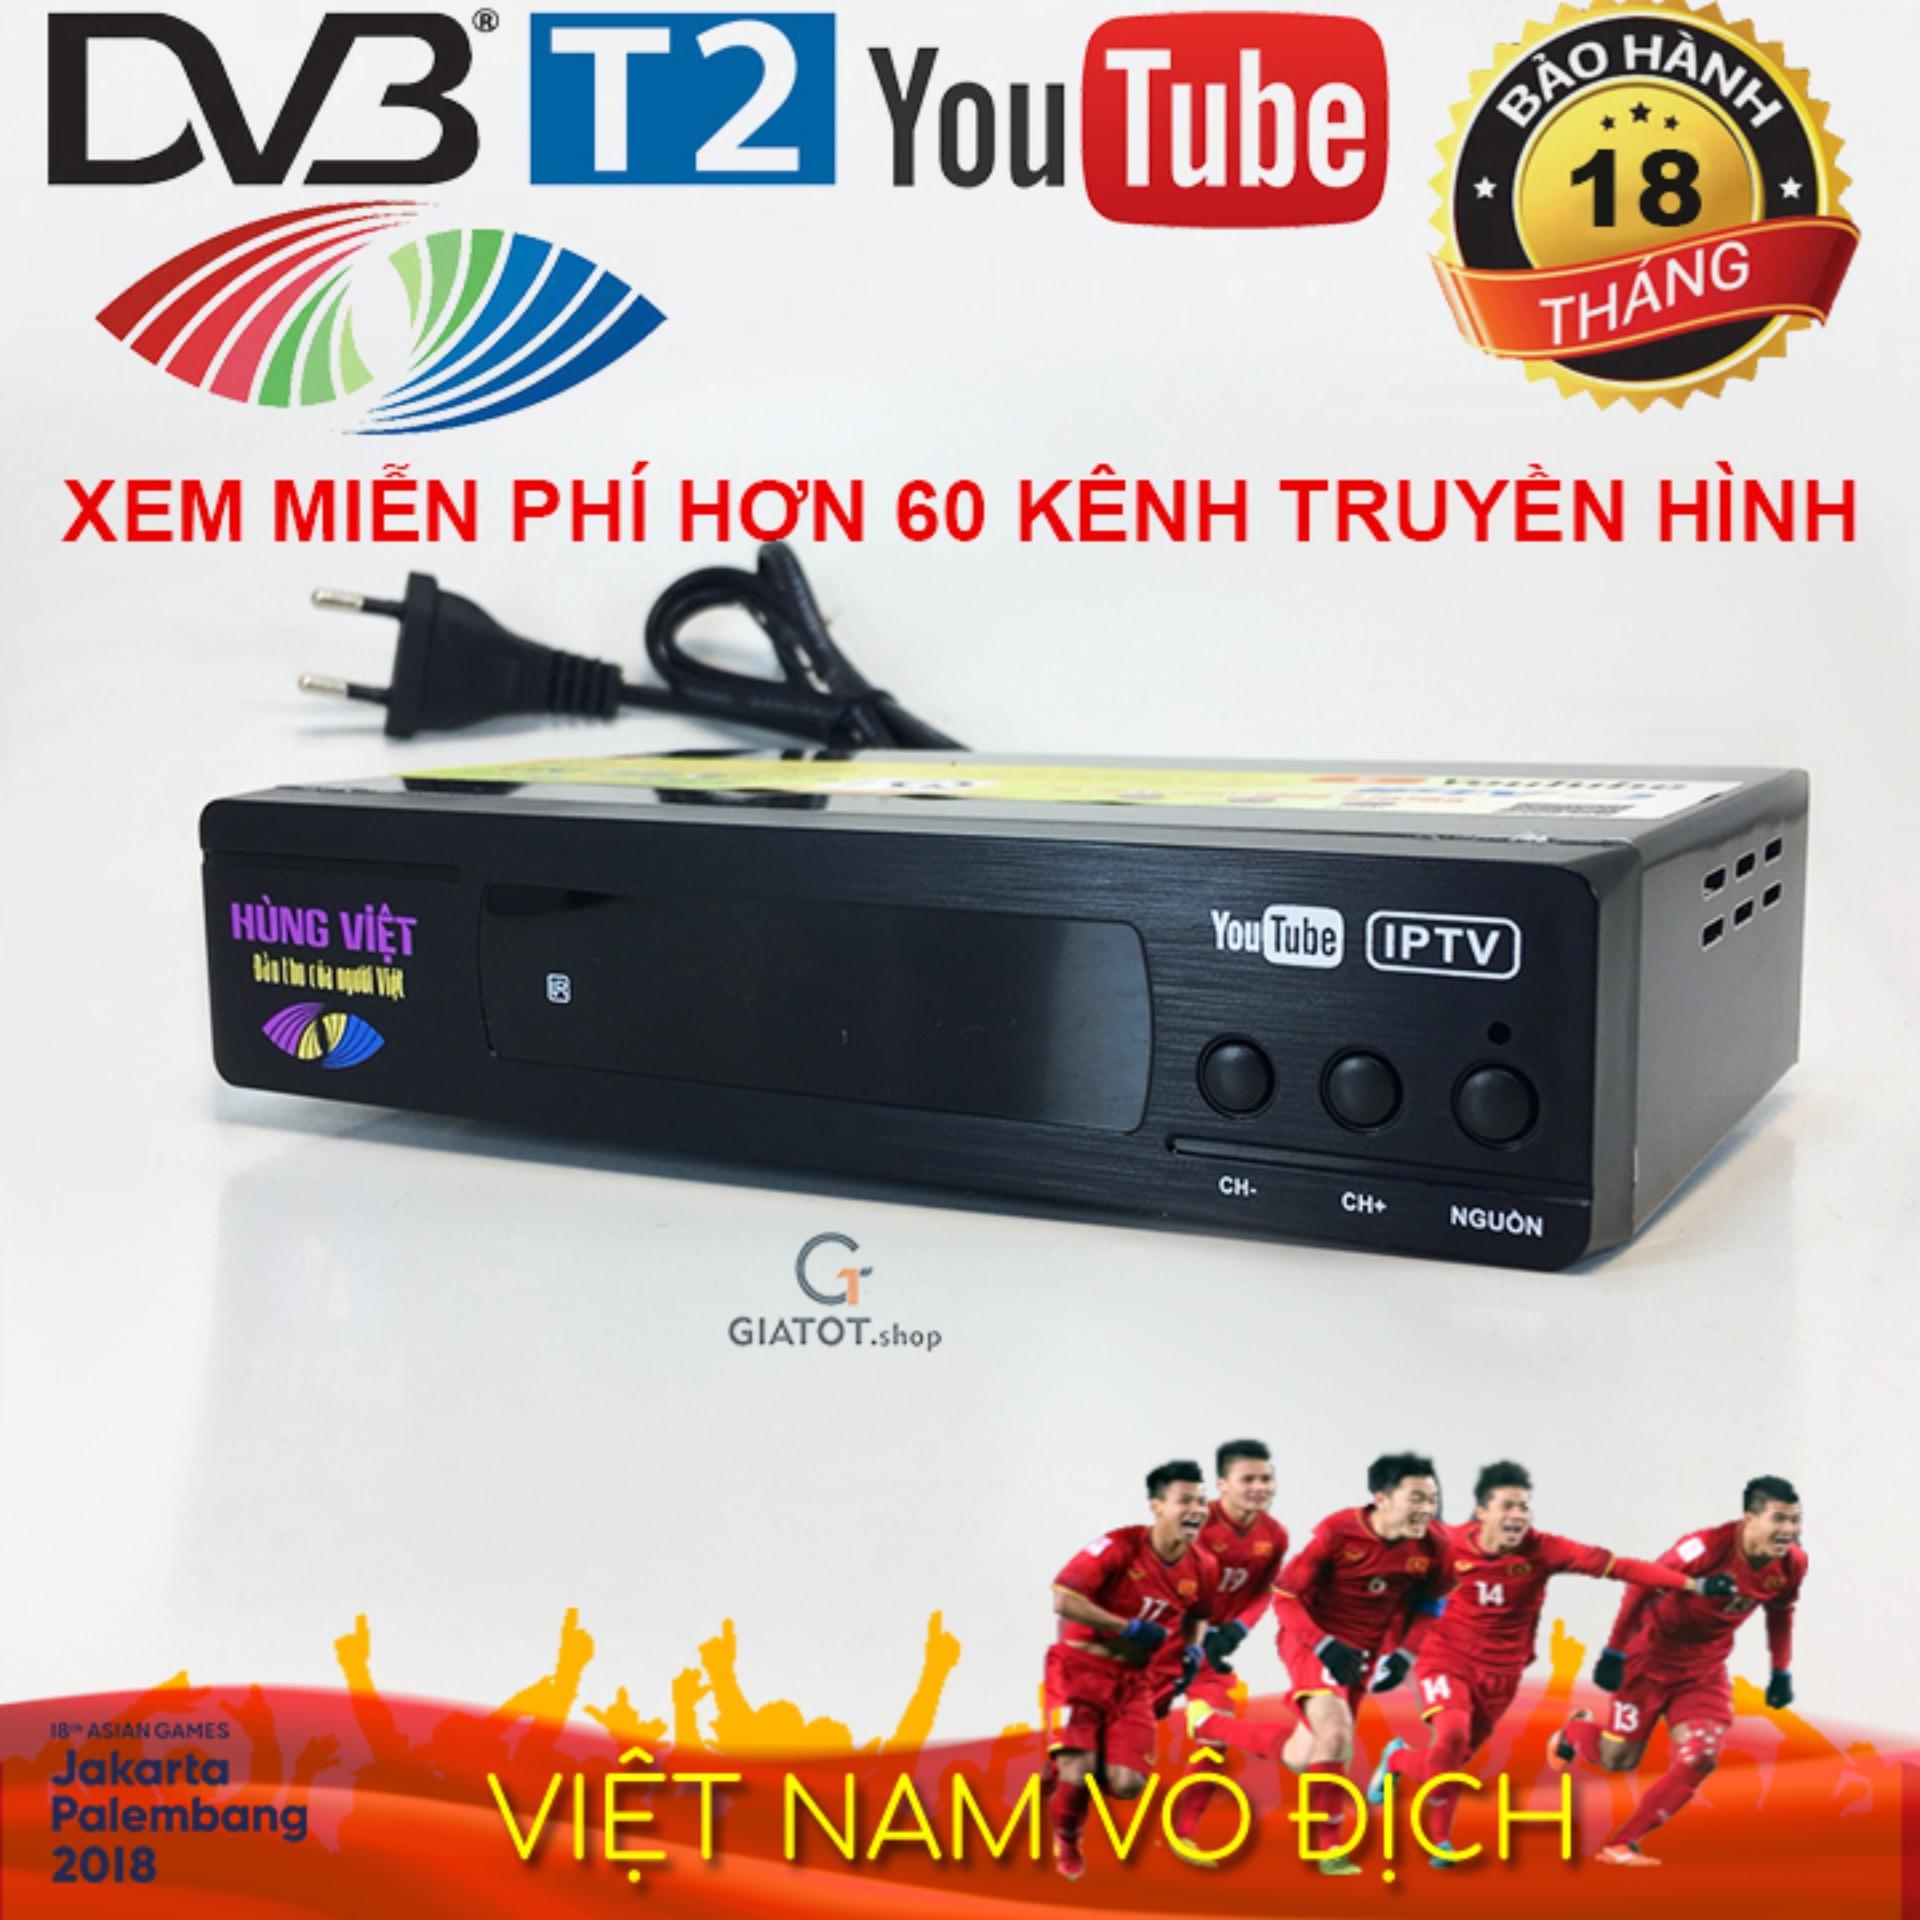 Đầu thu DVB T2 Hùng Việt TS 123 internet xem Youtube, IPTV phiên bản 2018